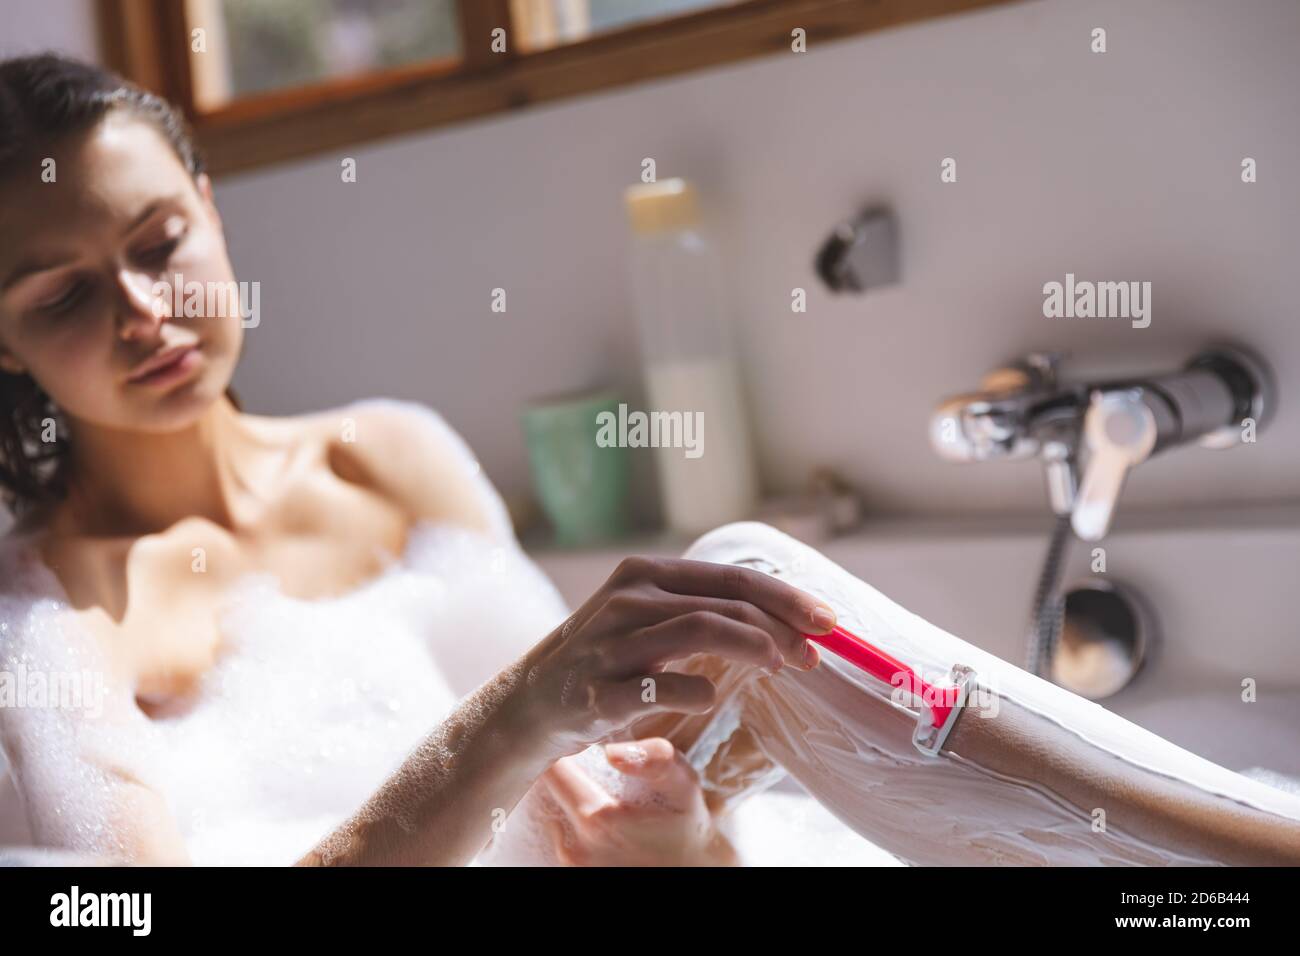 Frau rasieren ihre Beine in der Badewanne Stockfoto